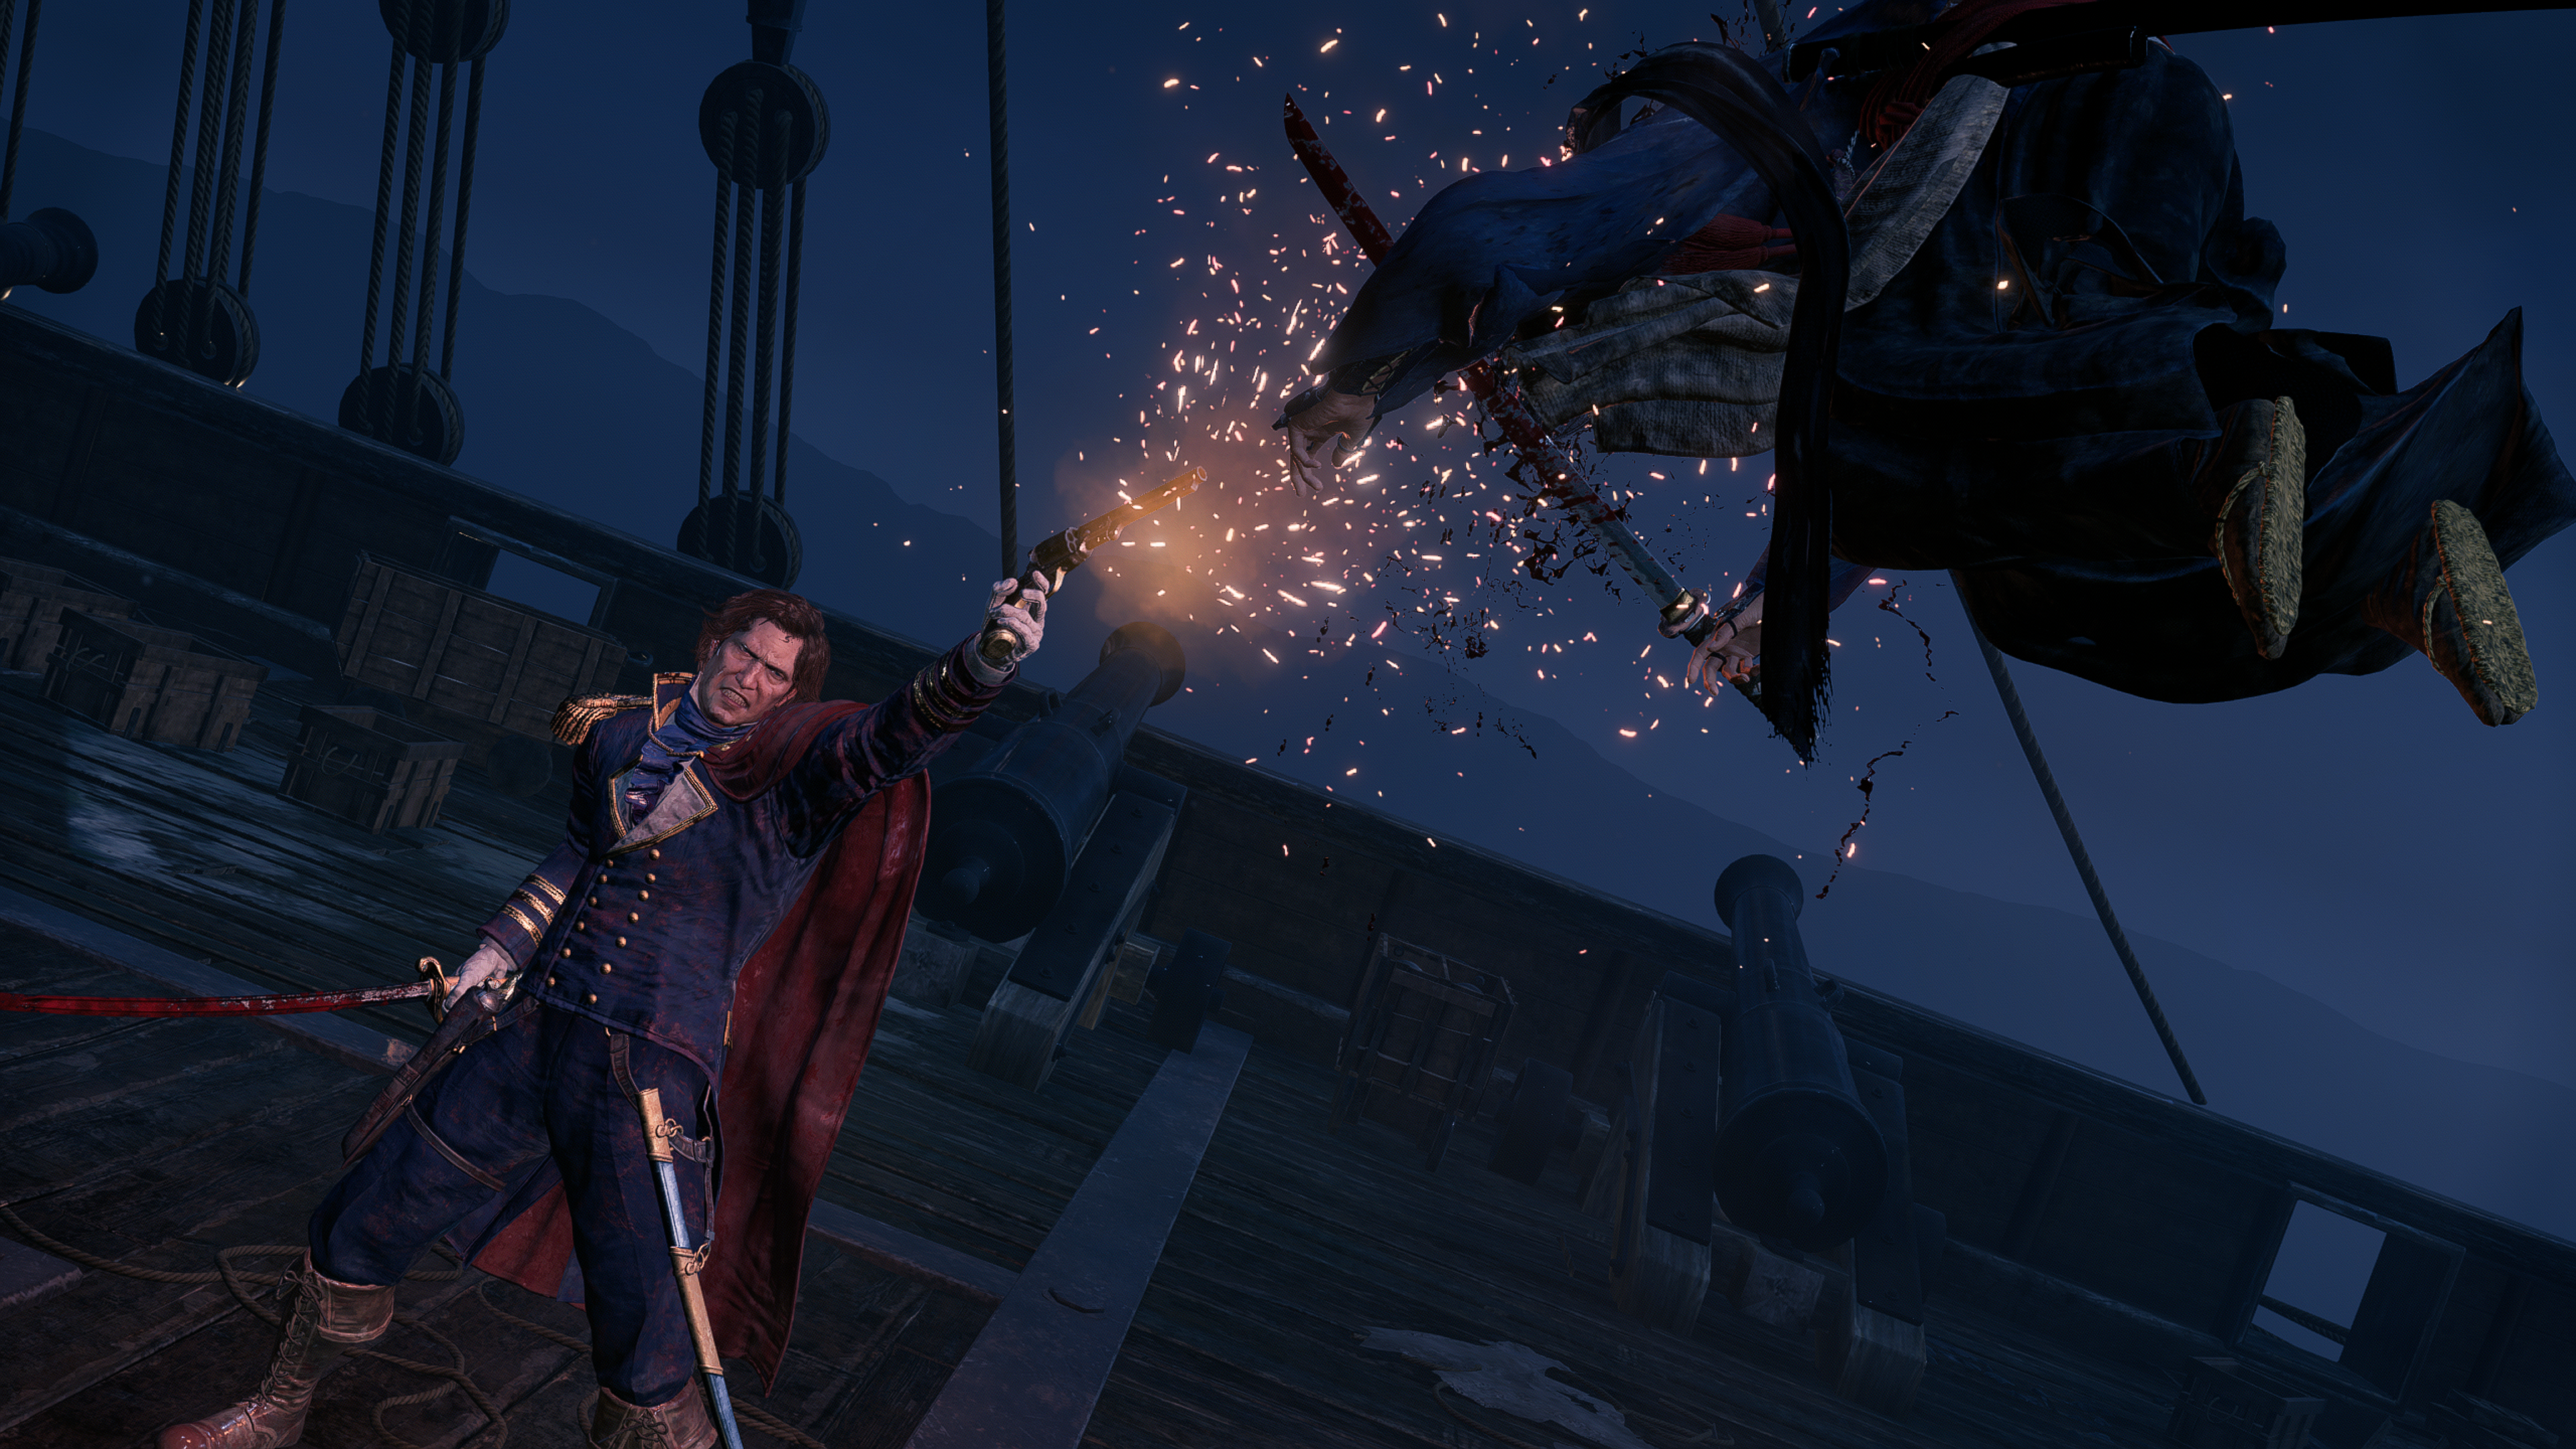 Официальный скриншот Rise of the Ronin, показывающий игрока, стреляющего во врага из воздуха из пистолета на корабле